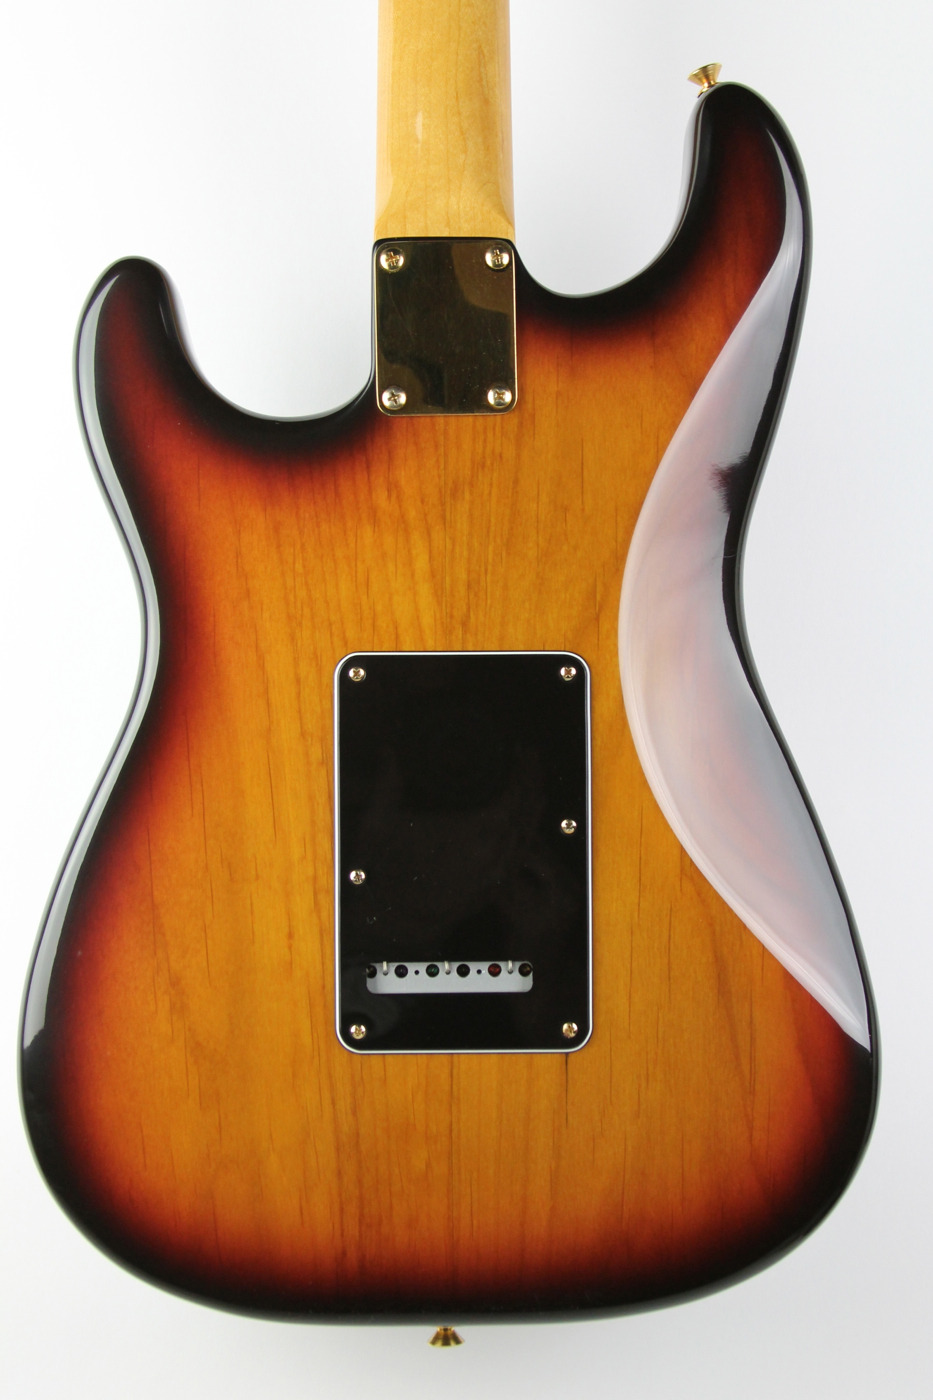 Fender SRV Stratocaster 1992 Sunburst Guitar For Sale Thunder Road Guitars